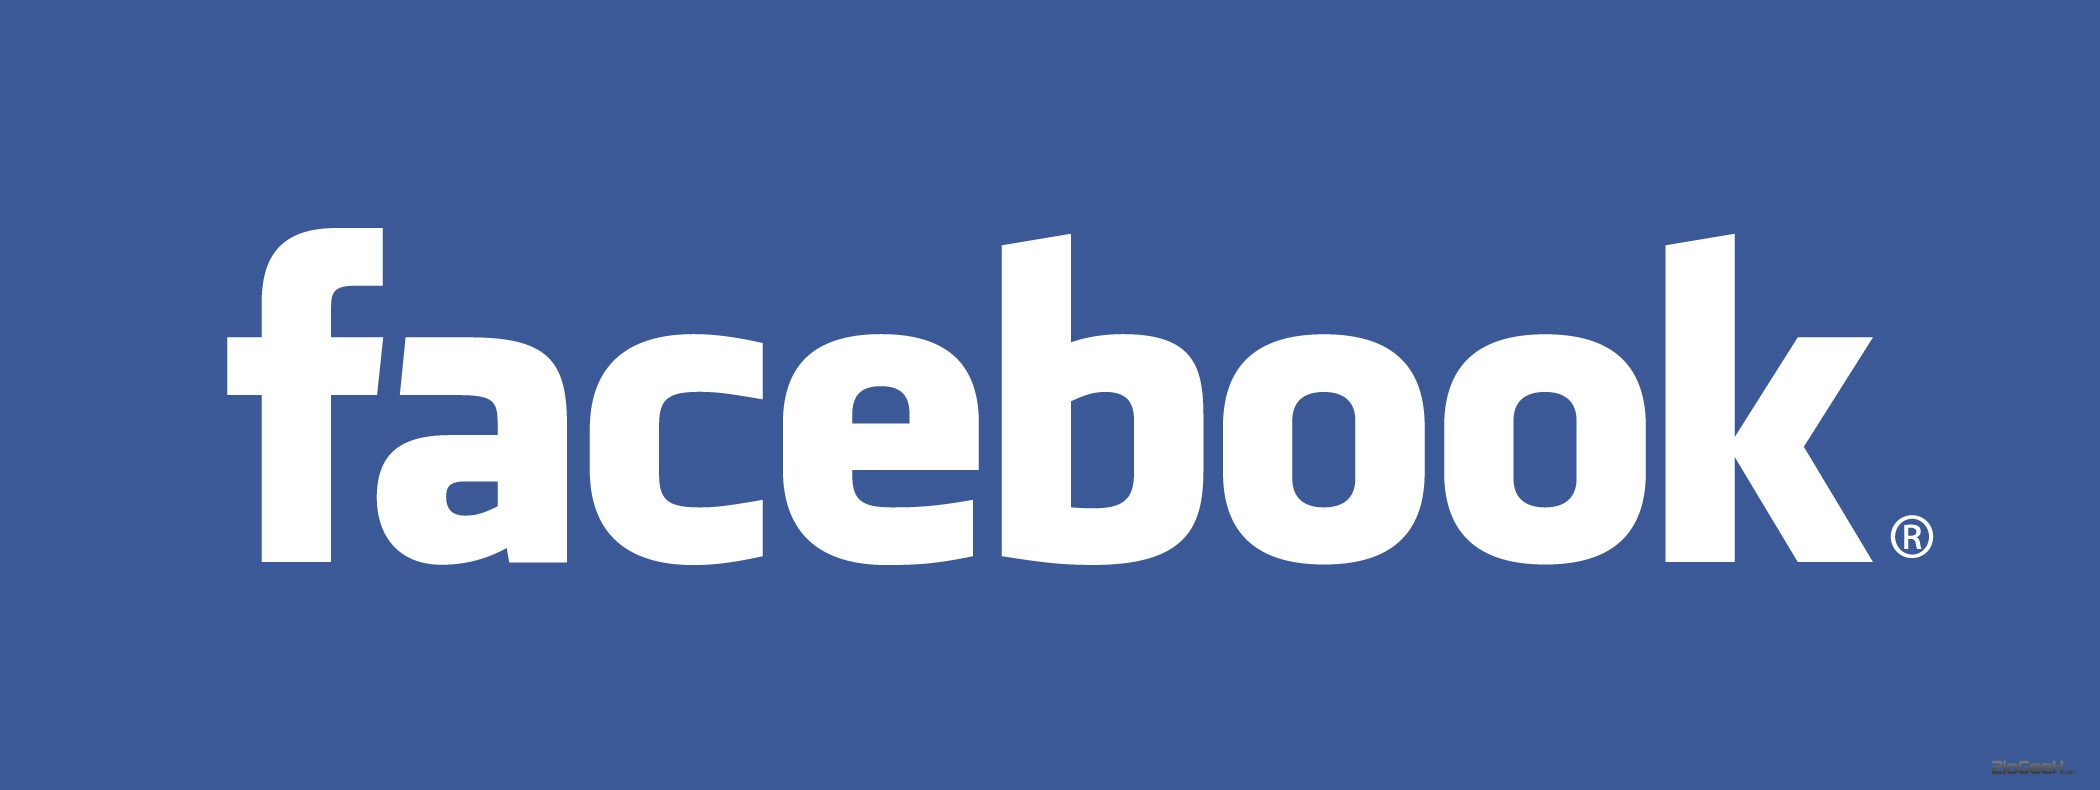 Guadagnare Online : Fare Soldi Con Facebook